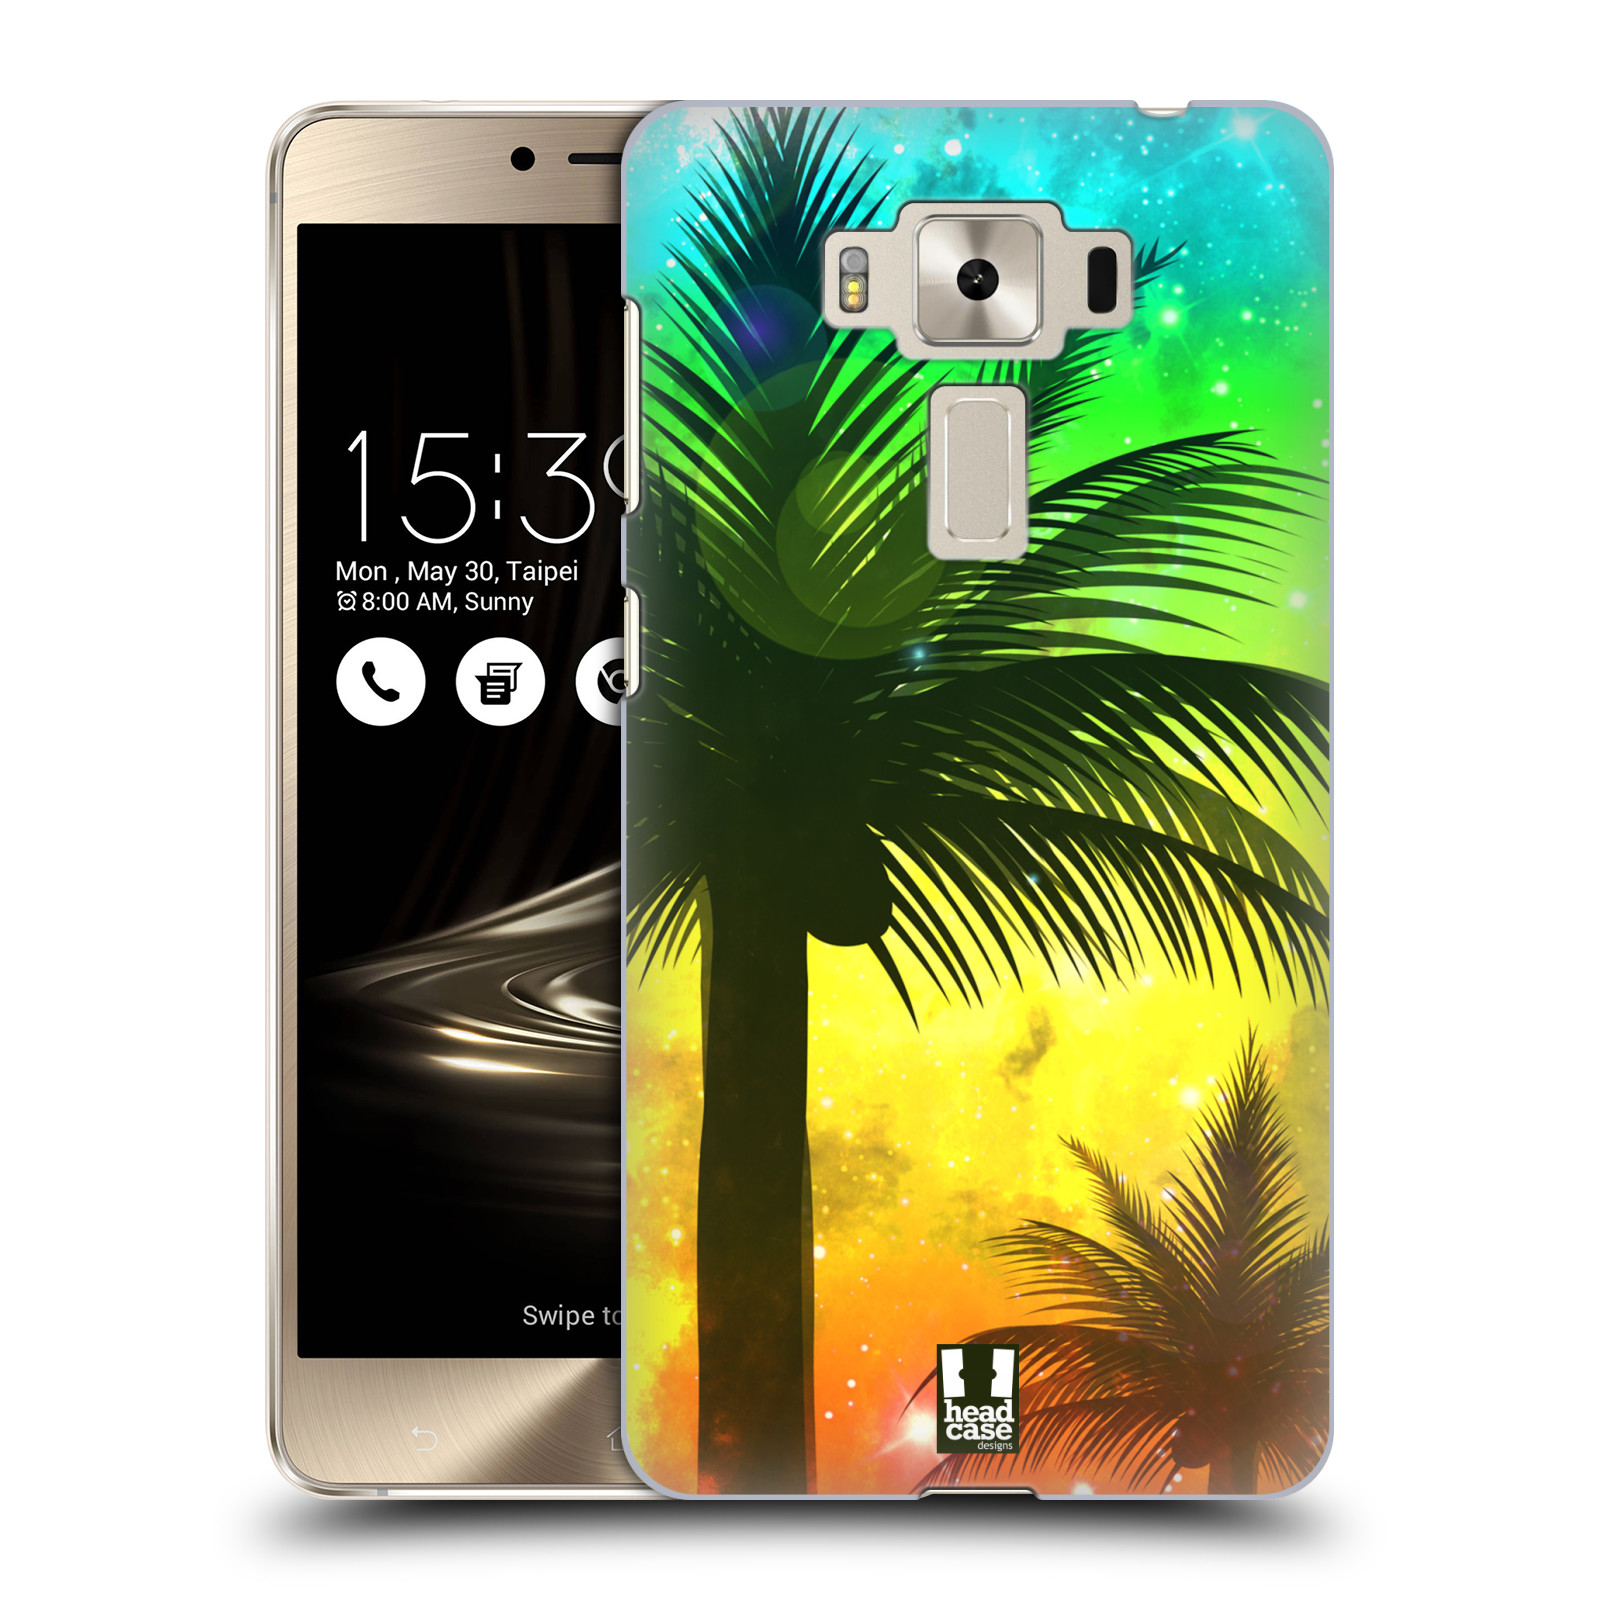 HEAD CASE plastový obal na mobil Asus Zenfone 3 DELUXE ZS550KL vzor Kreslený motiv silueta moře a palmy ZELENÁ A ORANŽOVÁ